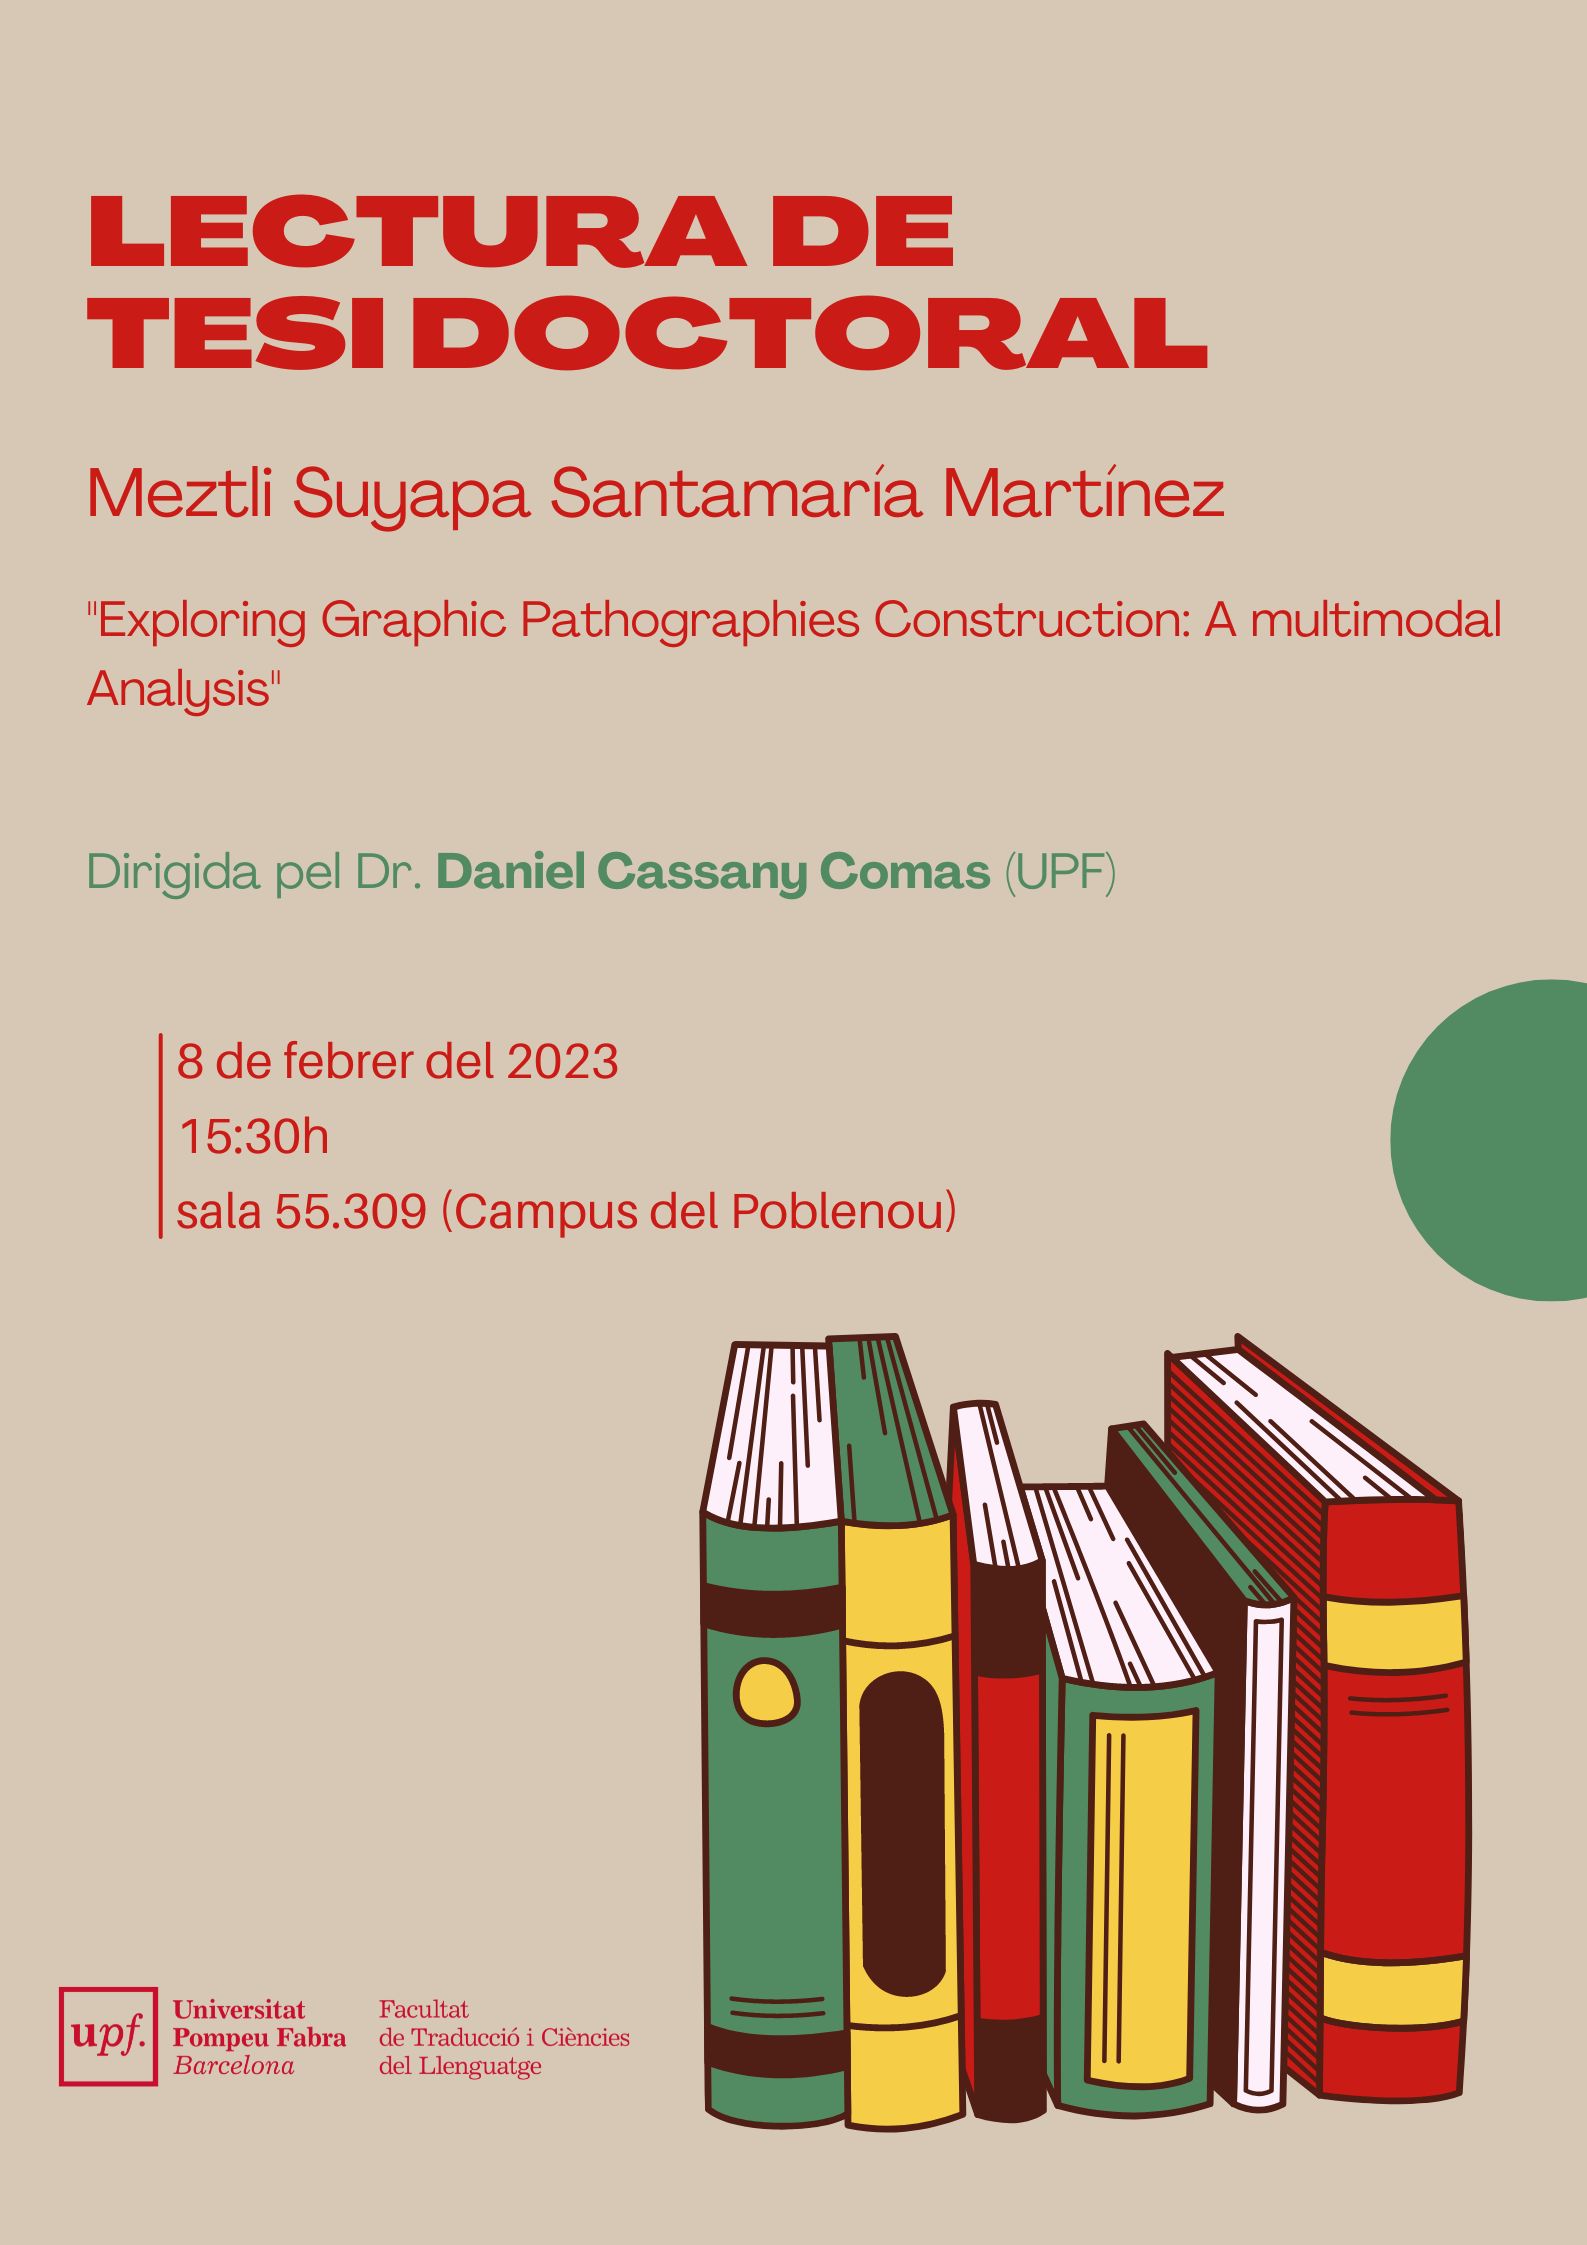 08/02/2023 Lectura de la tesi doctoral de Meztli Suyapa Santamaría Martínez, a les 15.30 hores